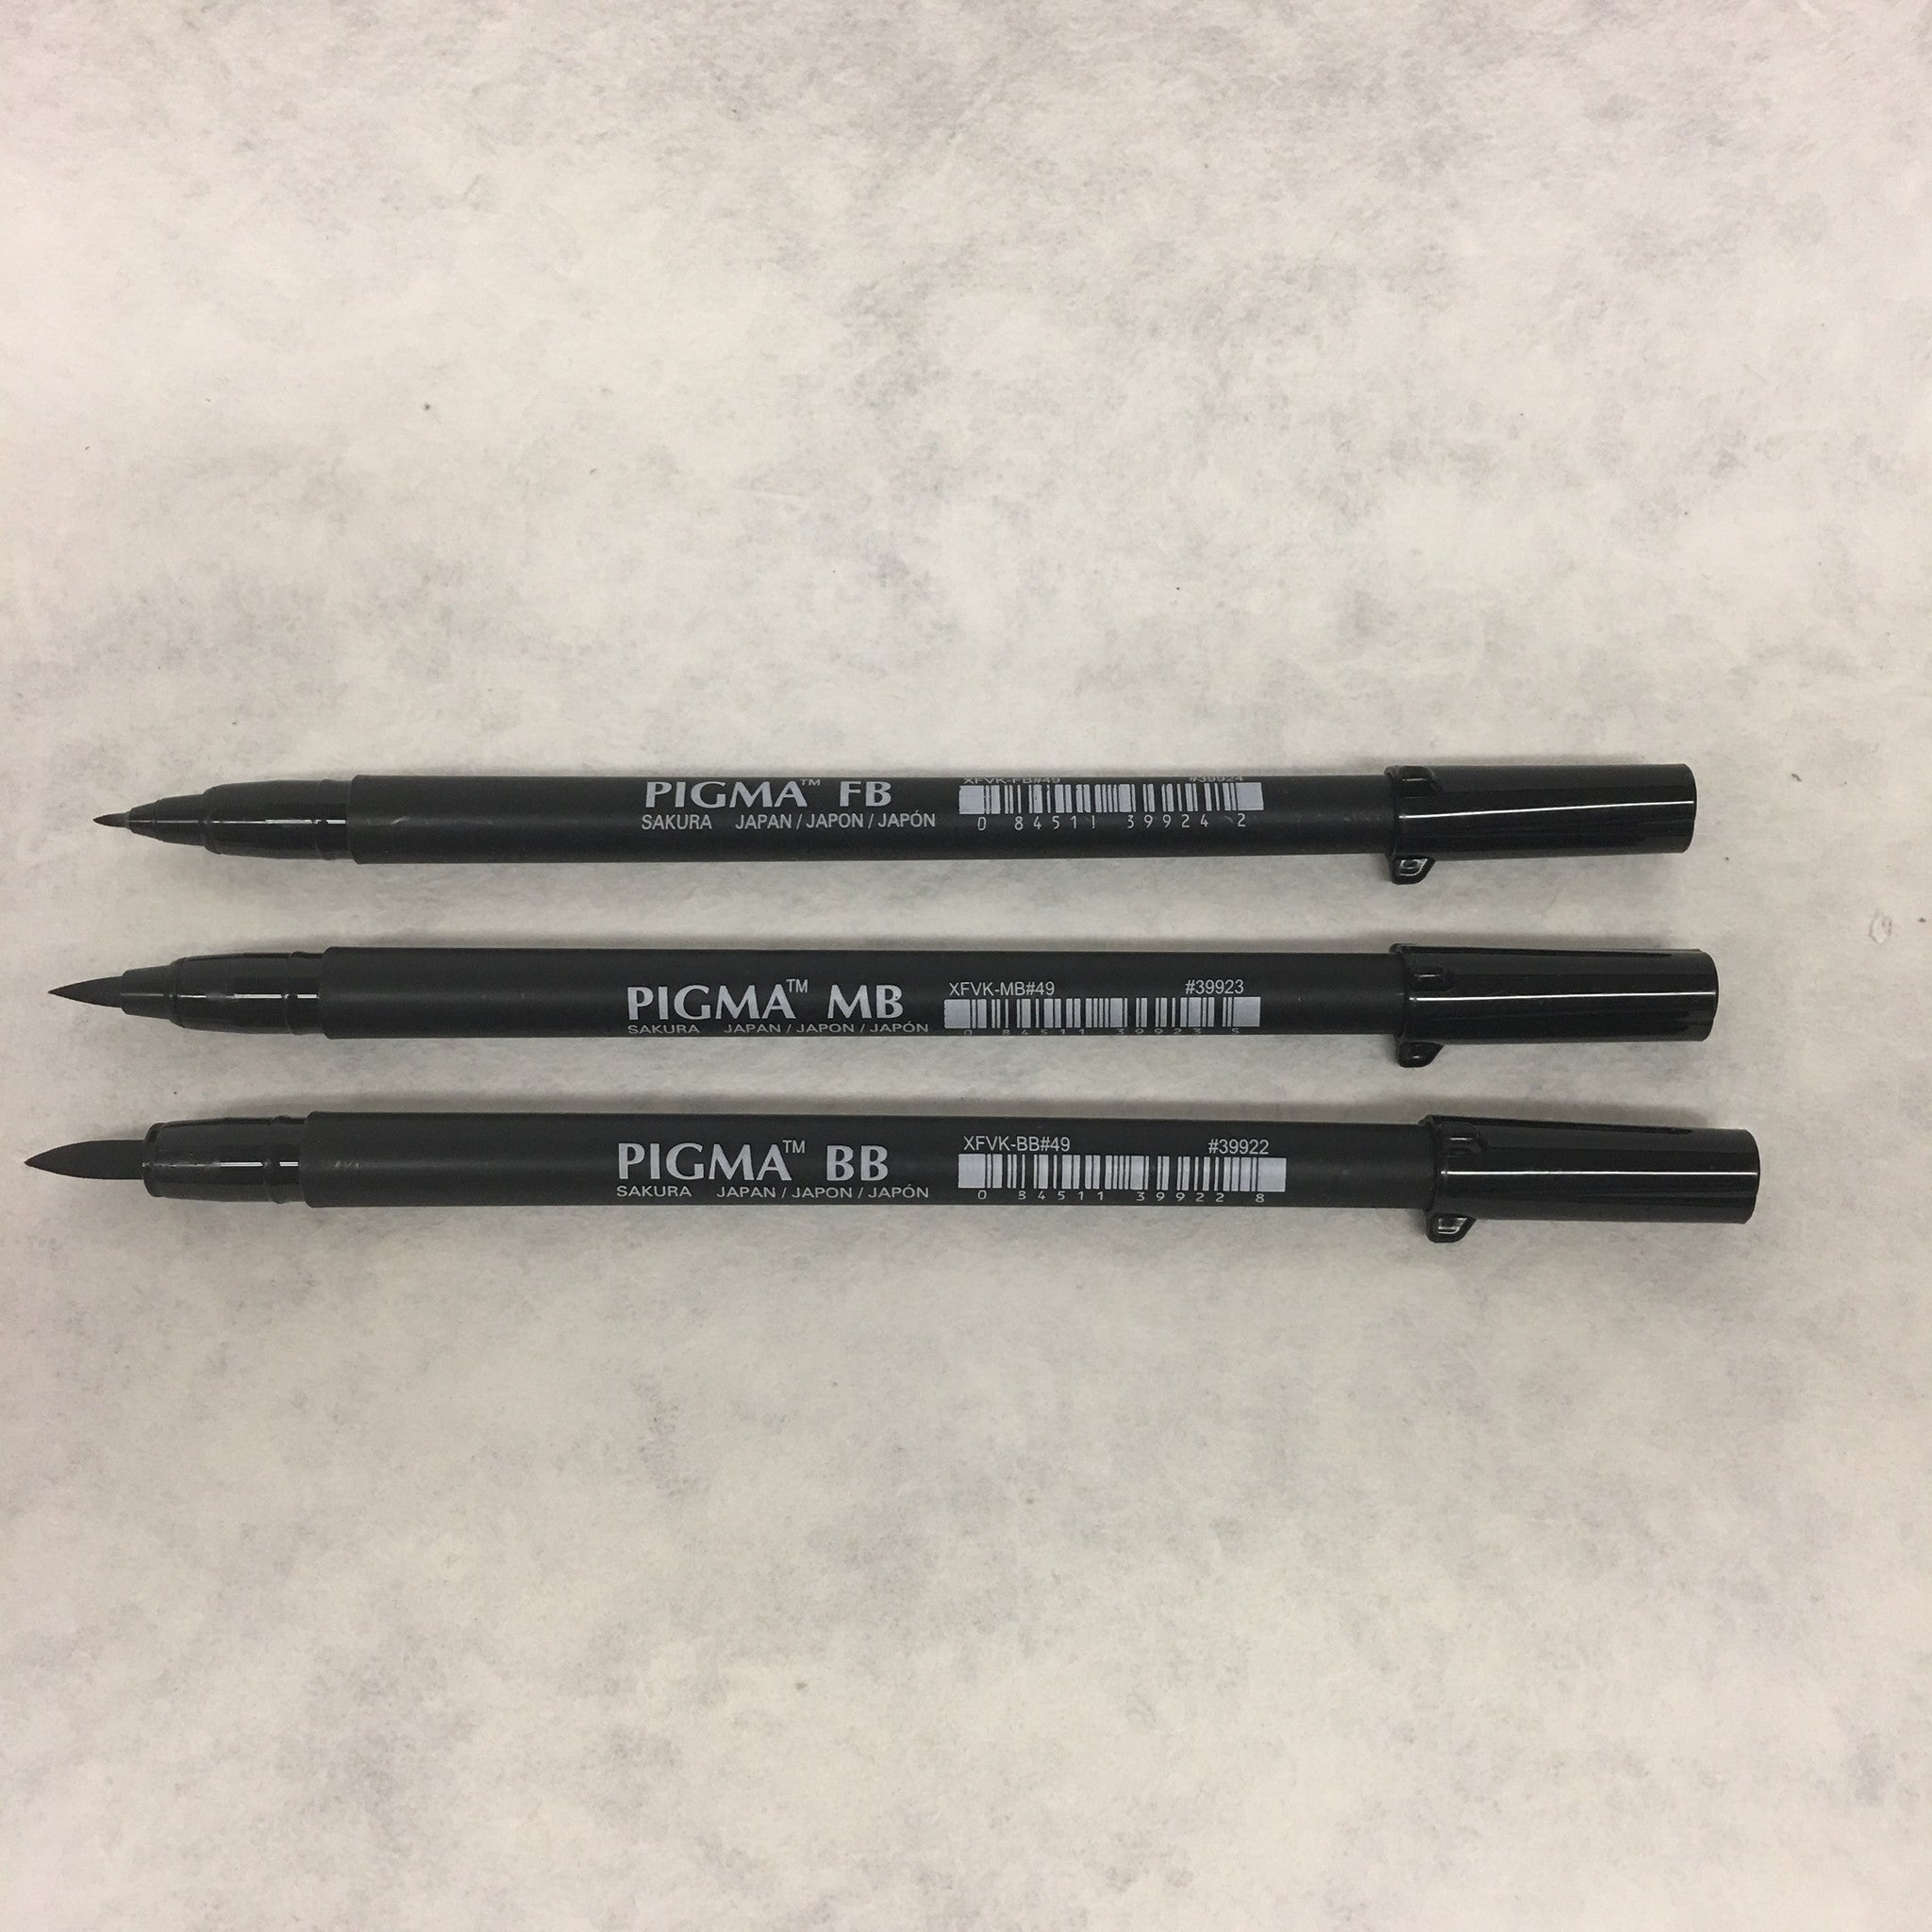 Pigma Professional Black Brush Pen